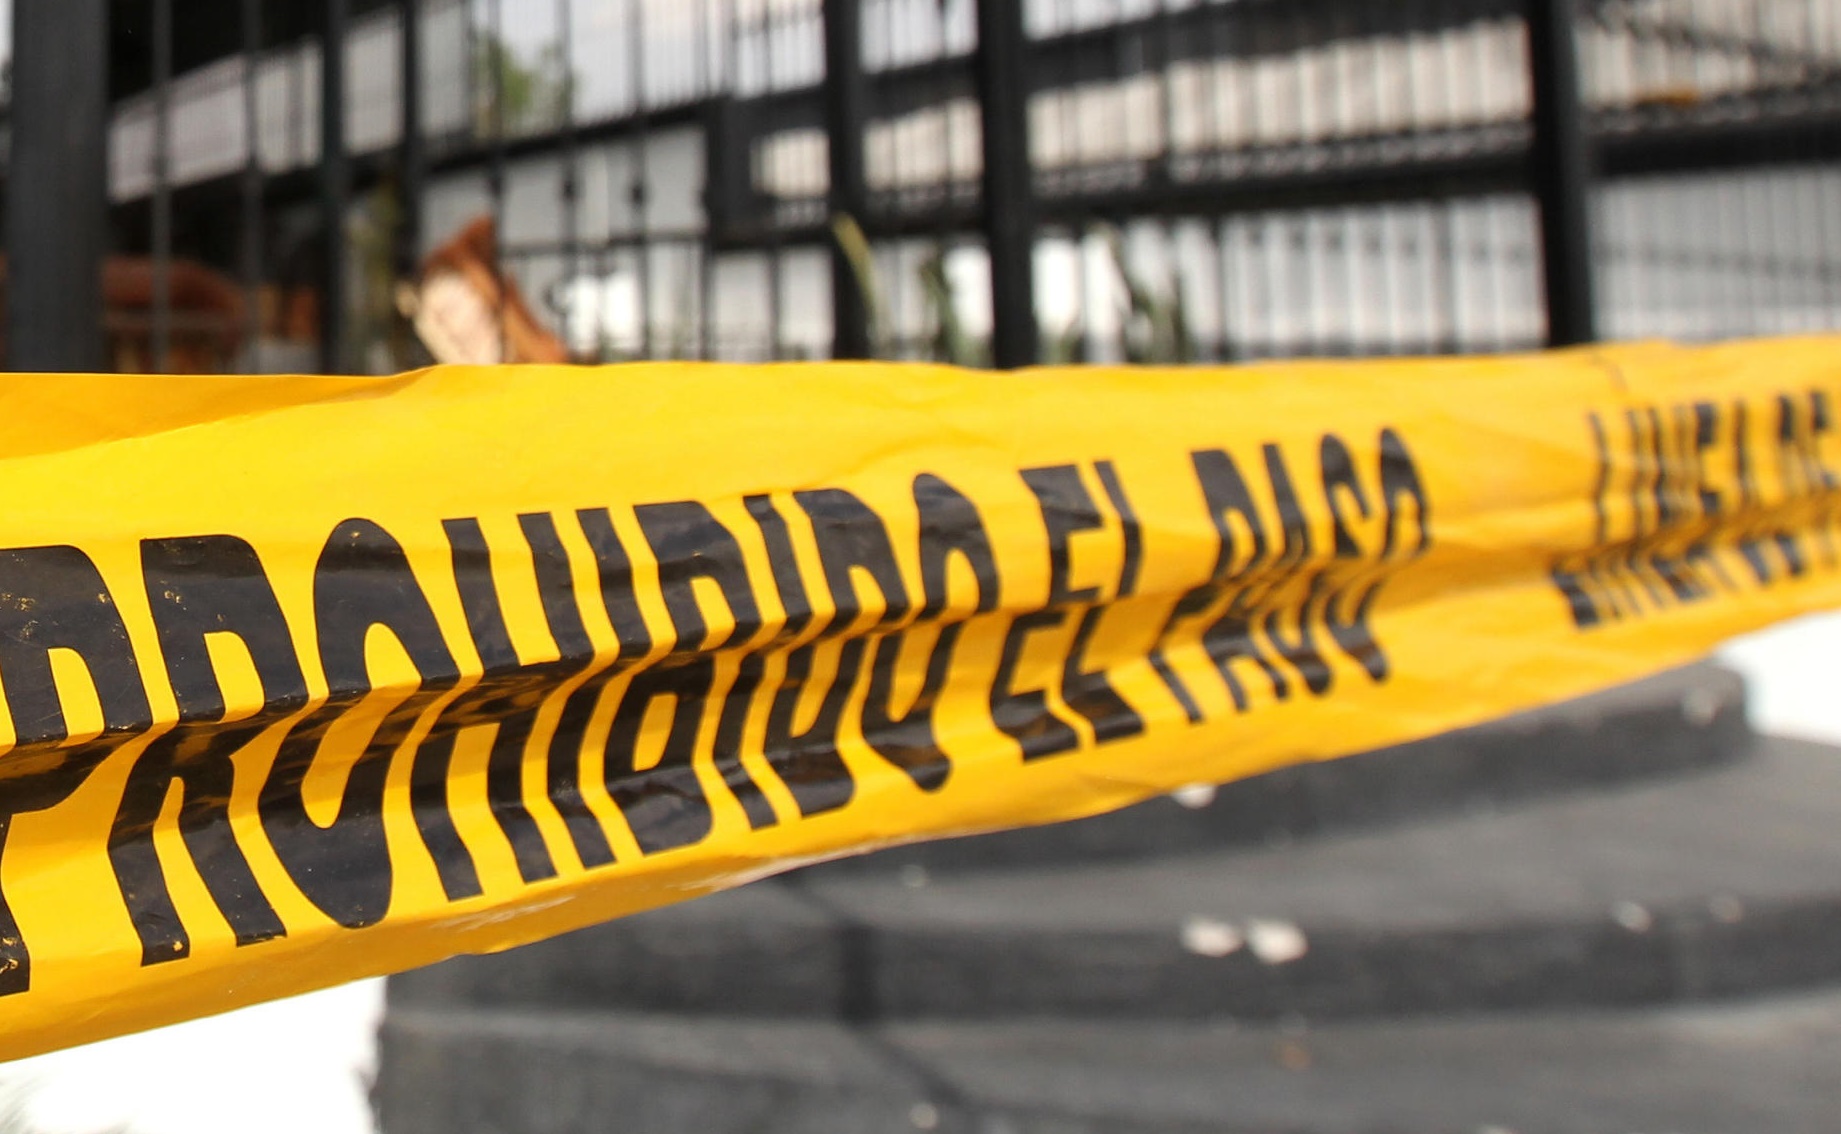 Matan a balazos a policía de Apodaca, Nuevo León; el uniformado estaba de descanso al momento de la agresión